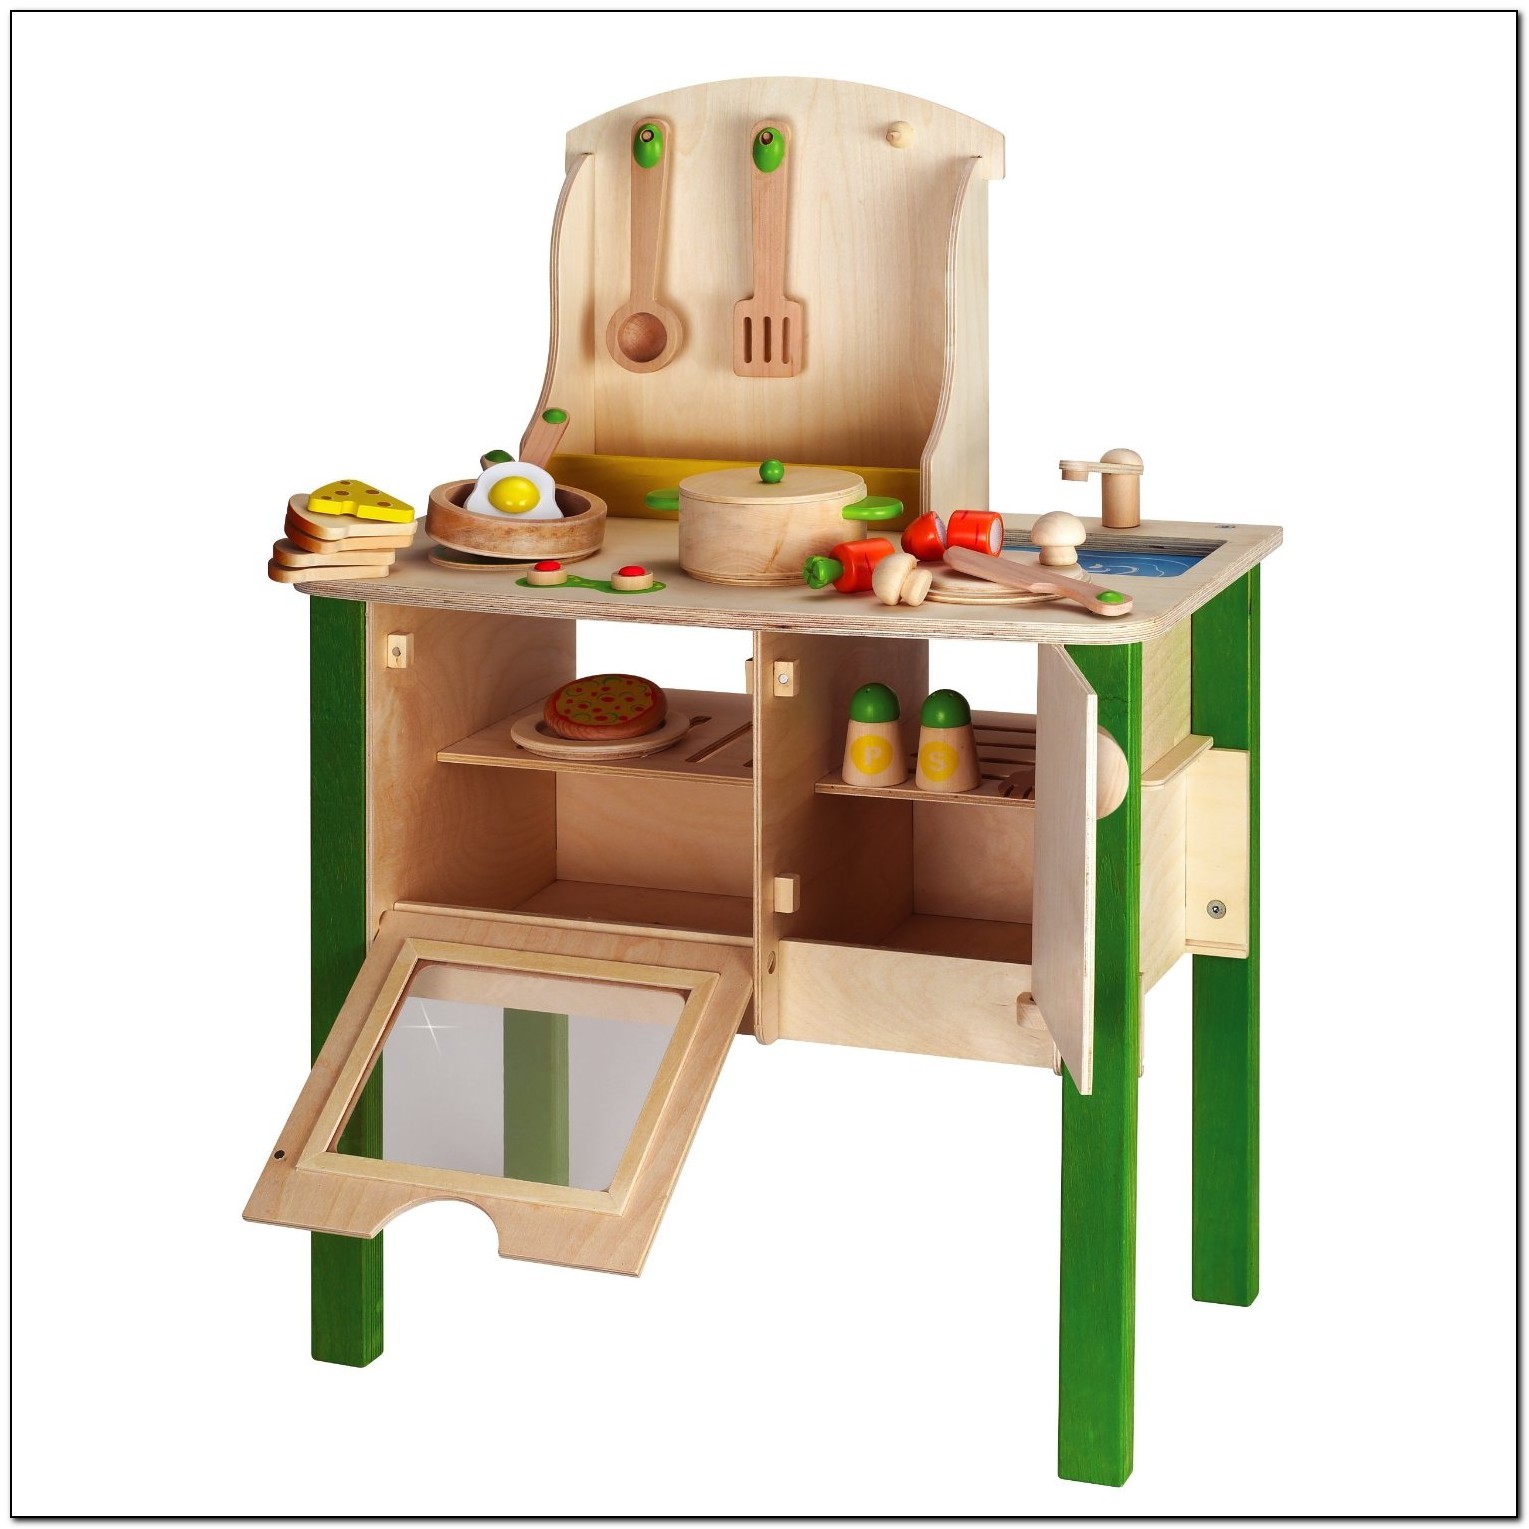 Wooden Kids Kitchen Sets 